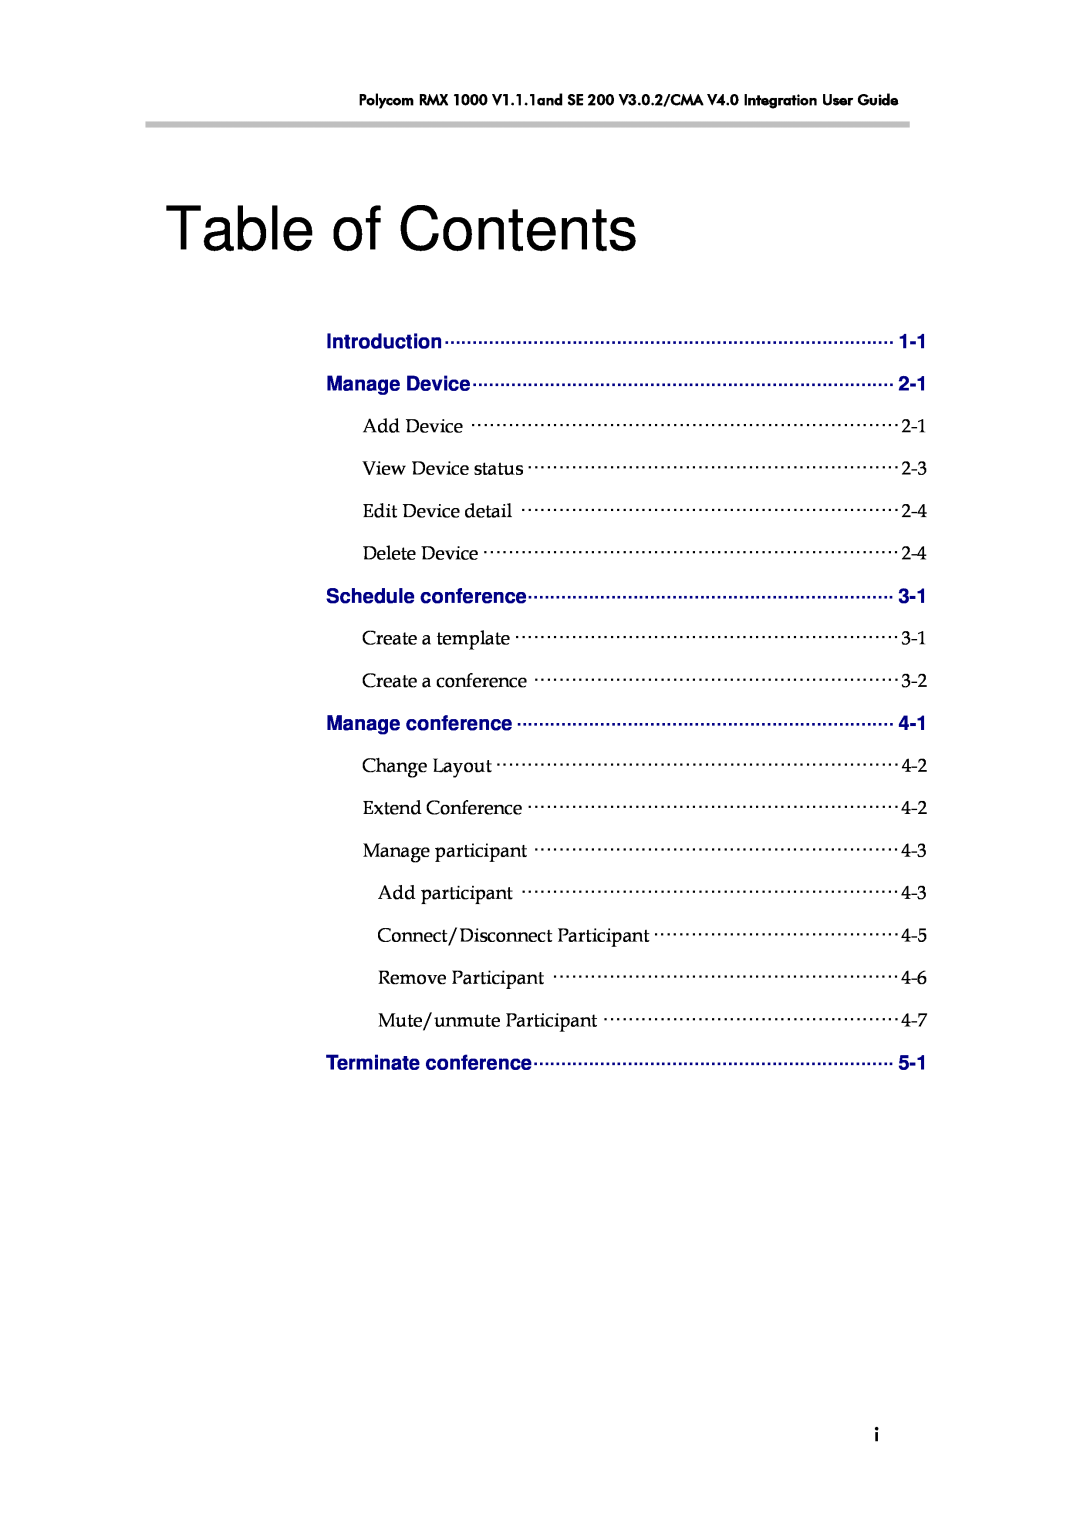 Polycom RMX 1000 V1.1.1, SE 200 V3.0.2/CMA manual Table of Contents 